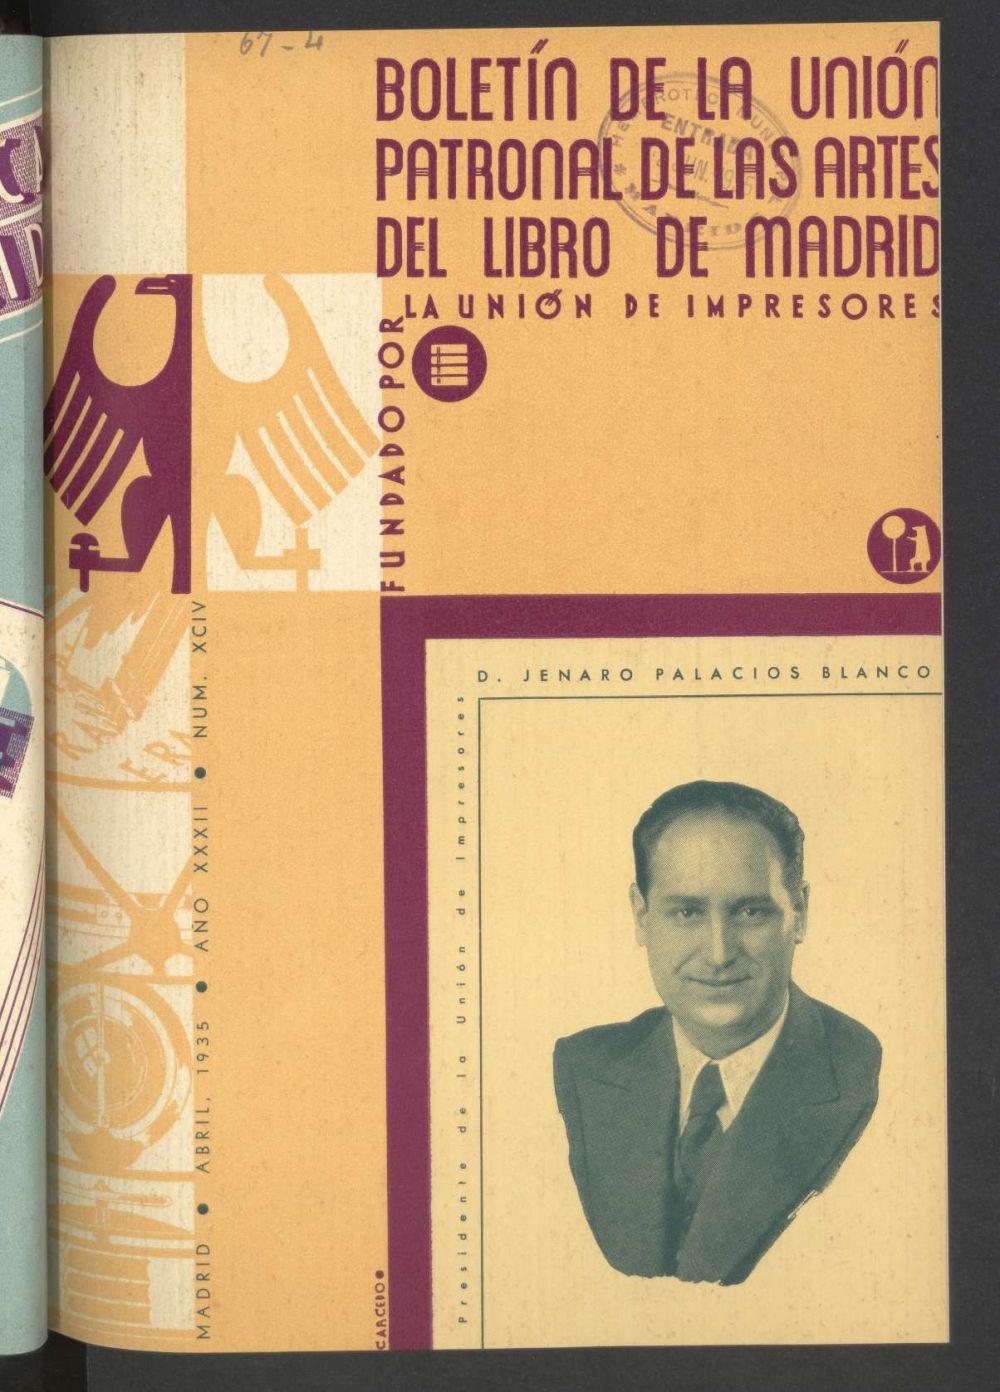 Boletn de la unin patronal de las artes del libro de Madrid de abril de 1935